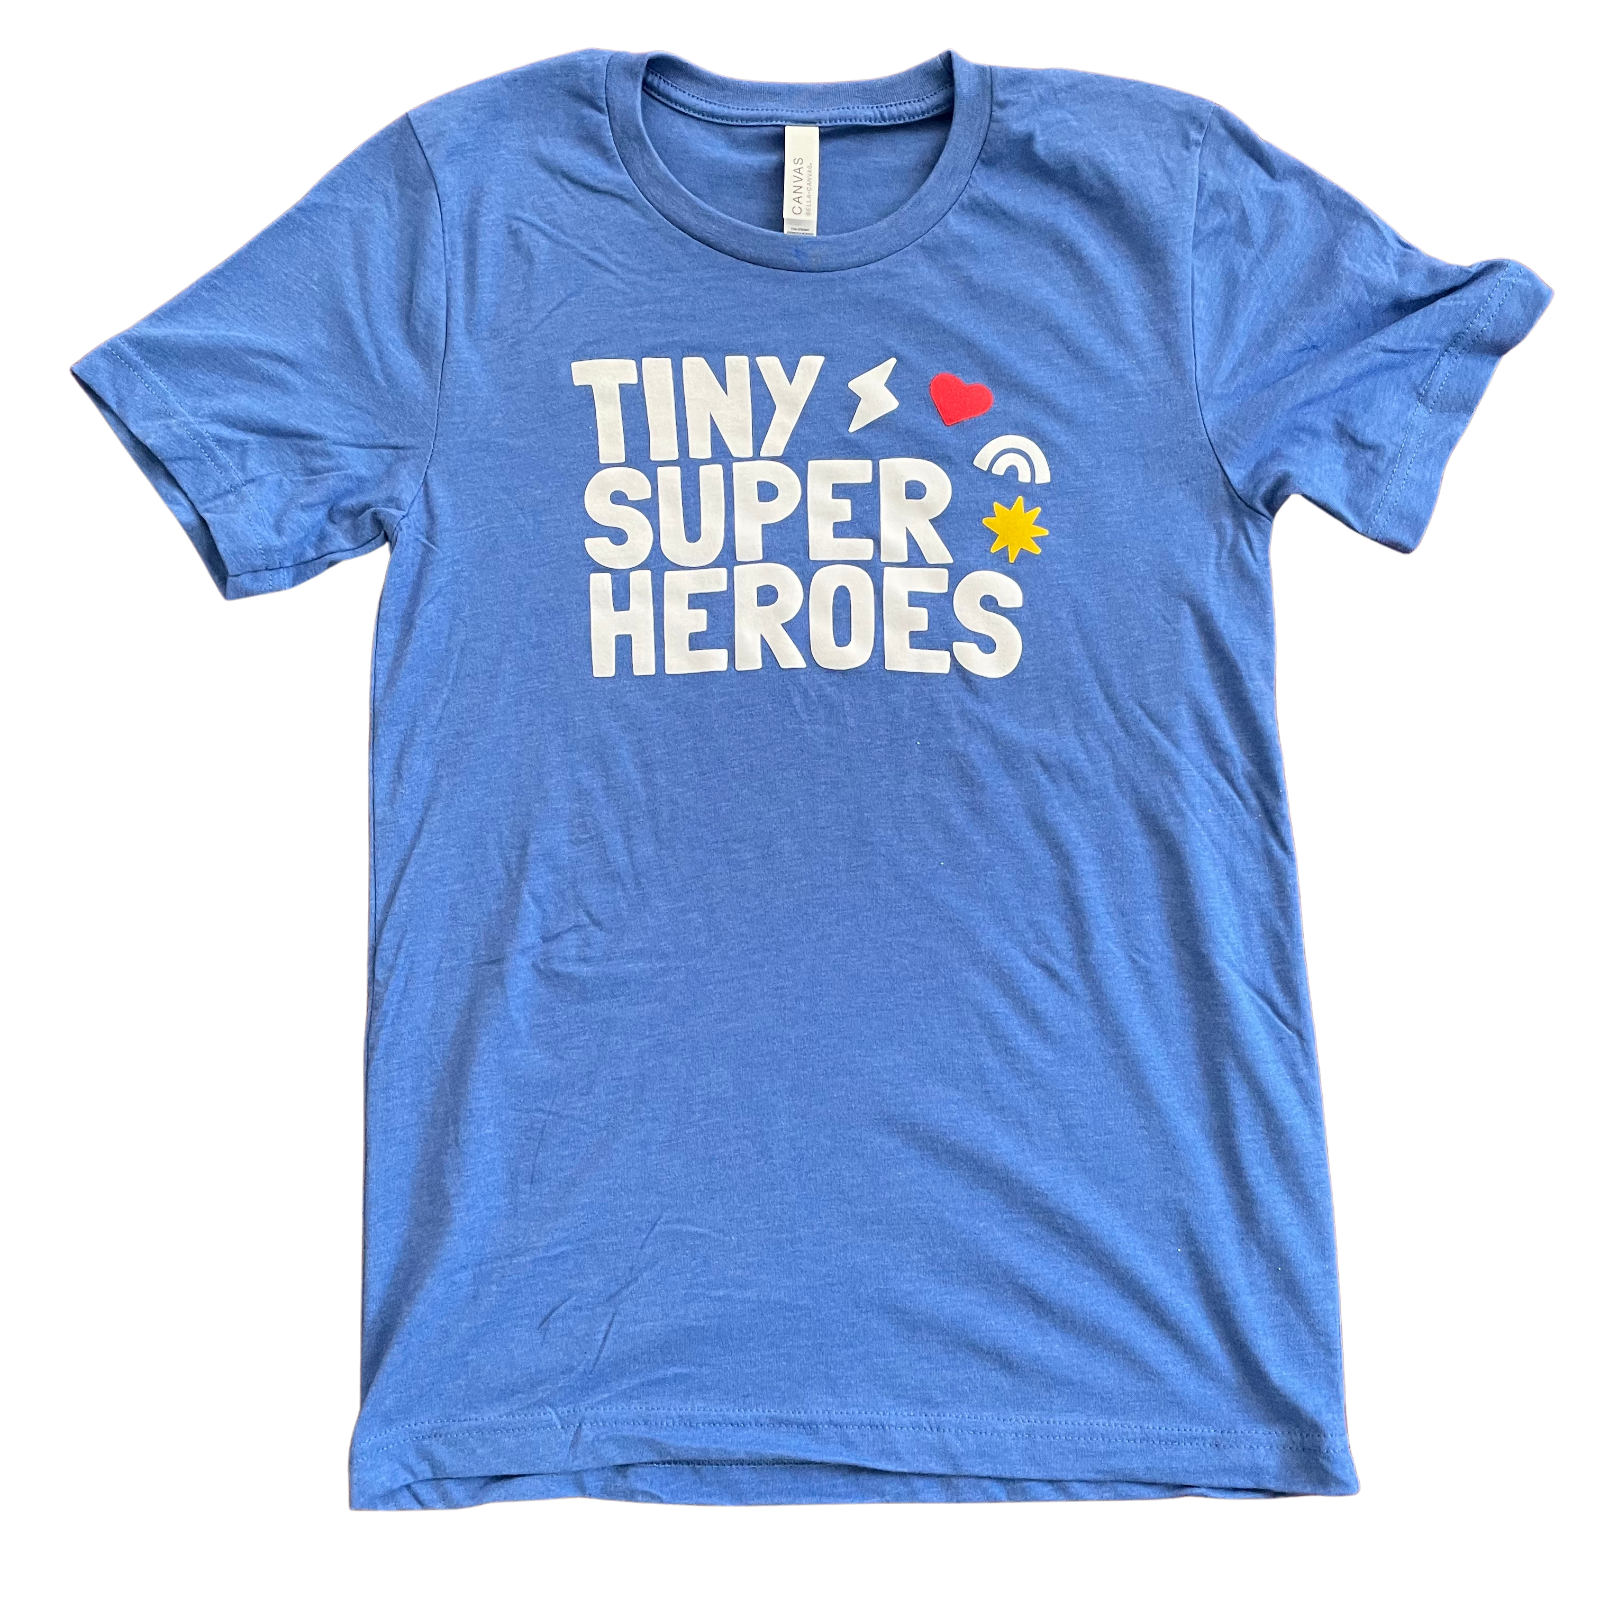 TSH T-Shirt - TinySuperheroes